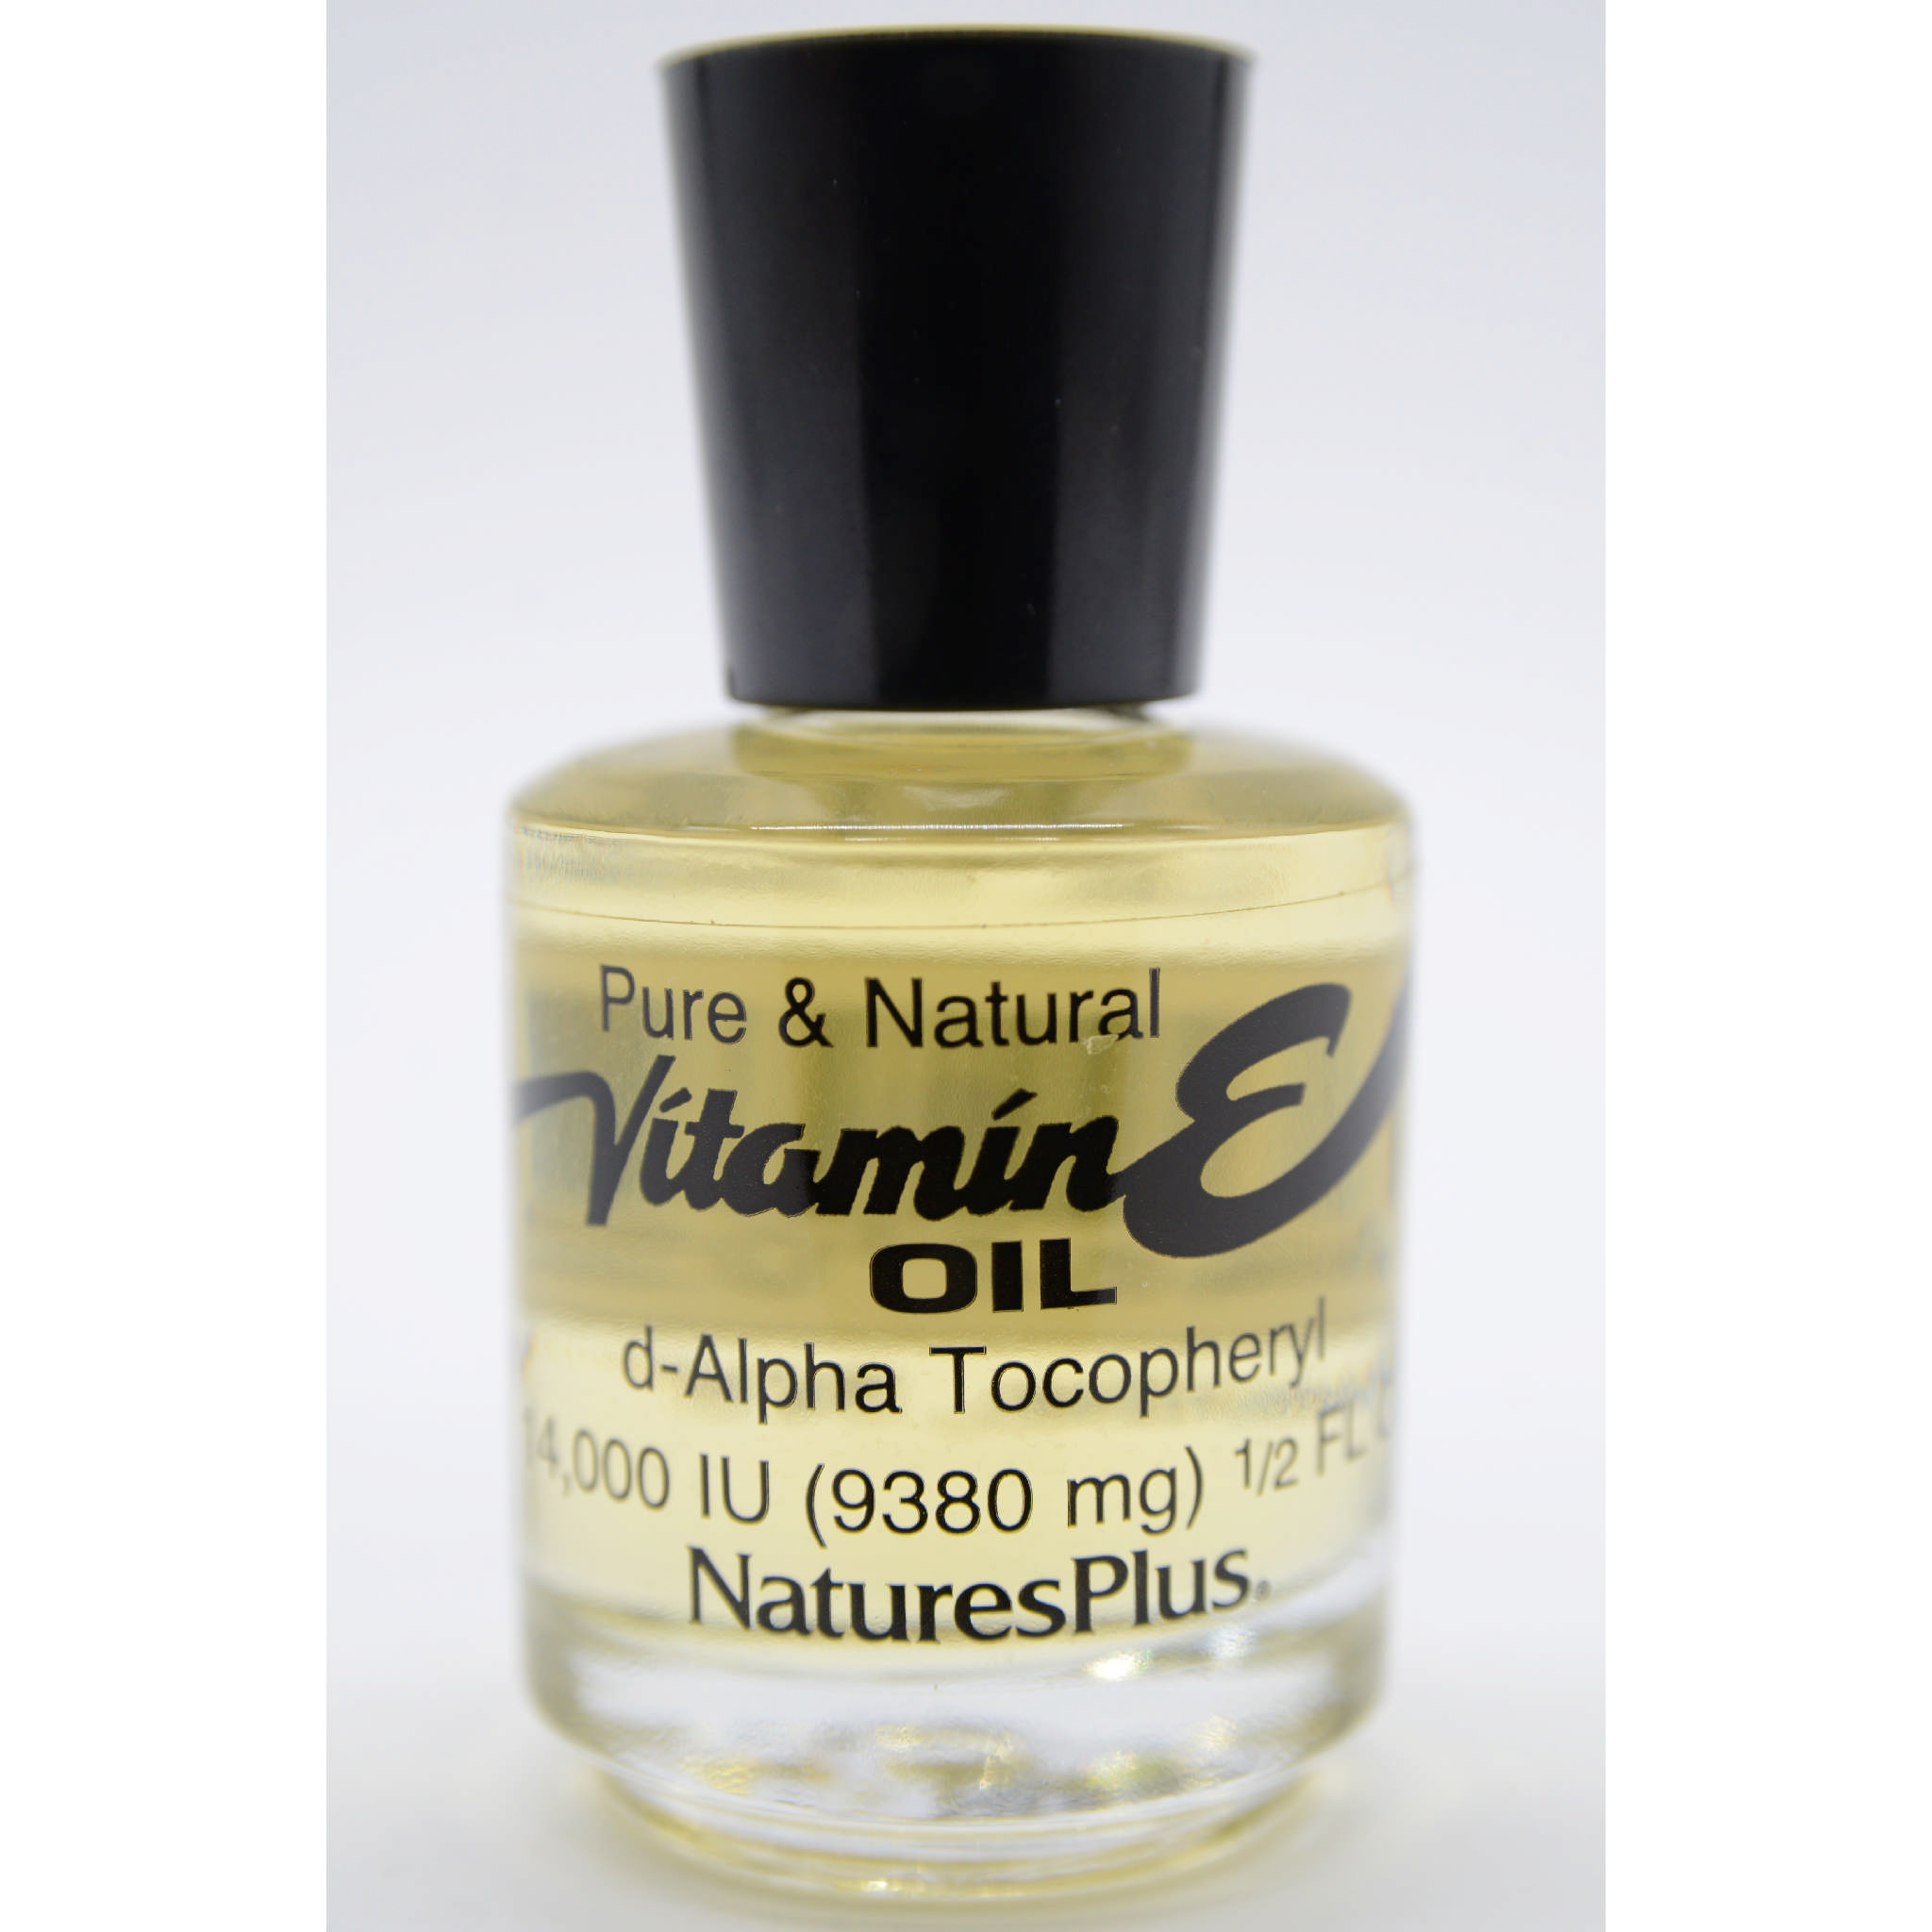 Natures Plus - E Oil liq 14 000